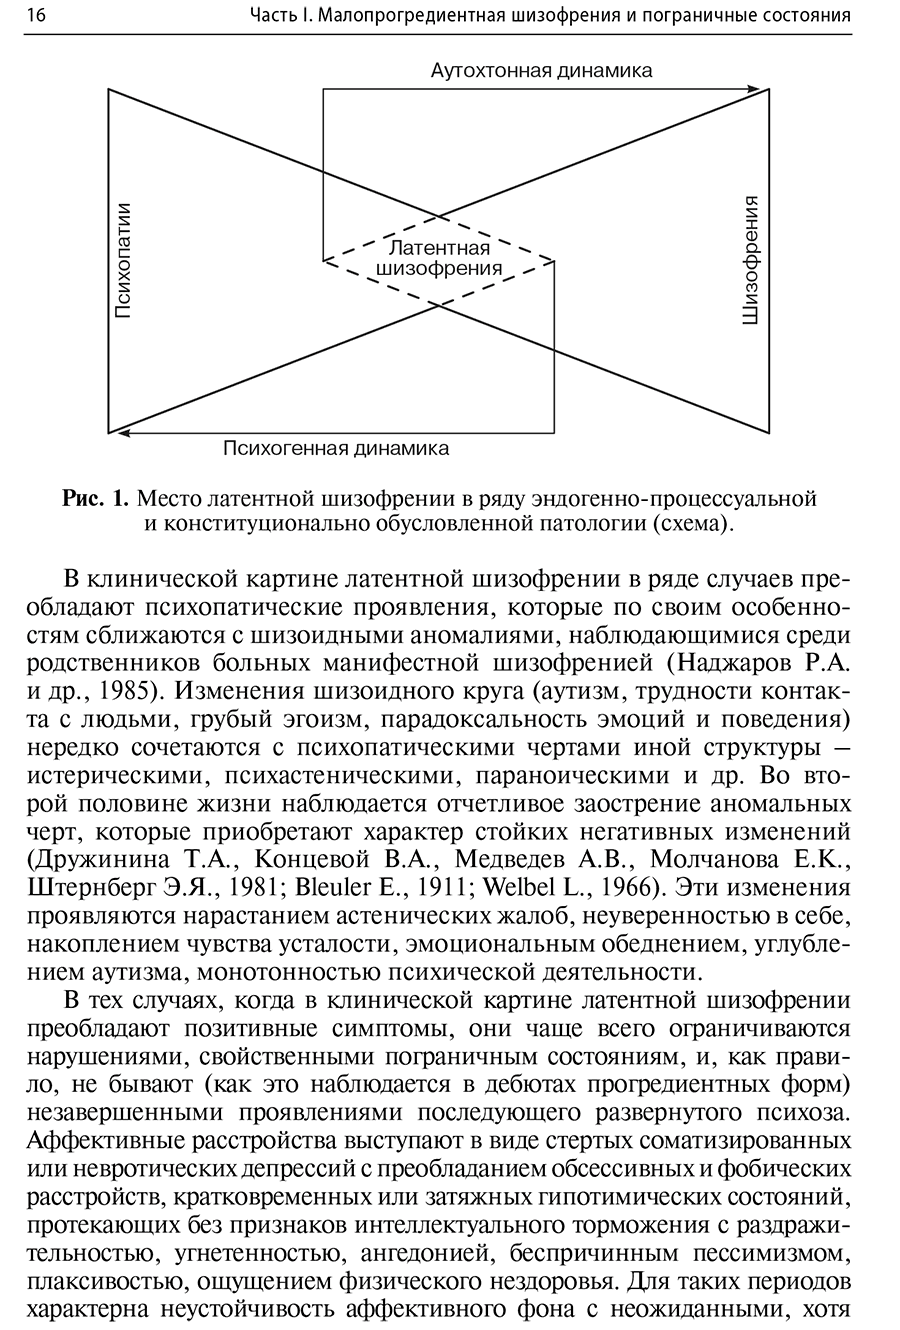 Рис. 1. Место латентной шизофрении в ряду эндогенно-процессуальной и конституционально обусловленной патологии (схема).